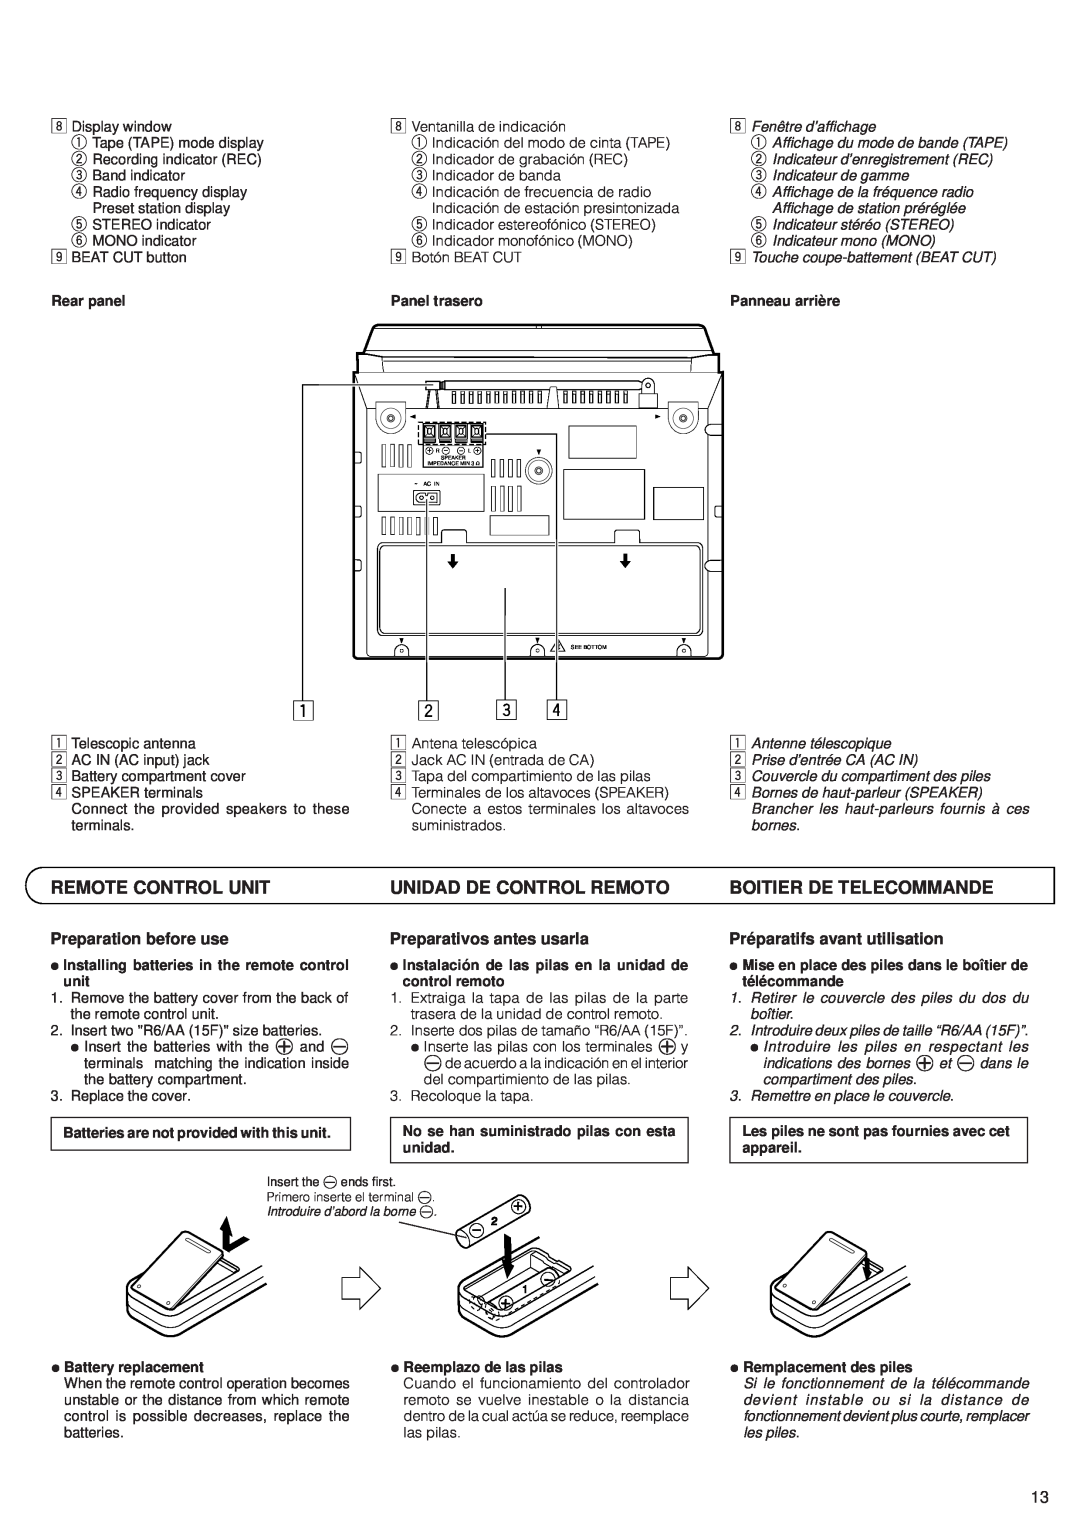 JVC PC-XC12, PC-XC8 manual Remote Control Unit, Unidad De Control Remoto, Boitier De Telecommande, Preparation before use 